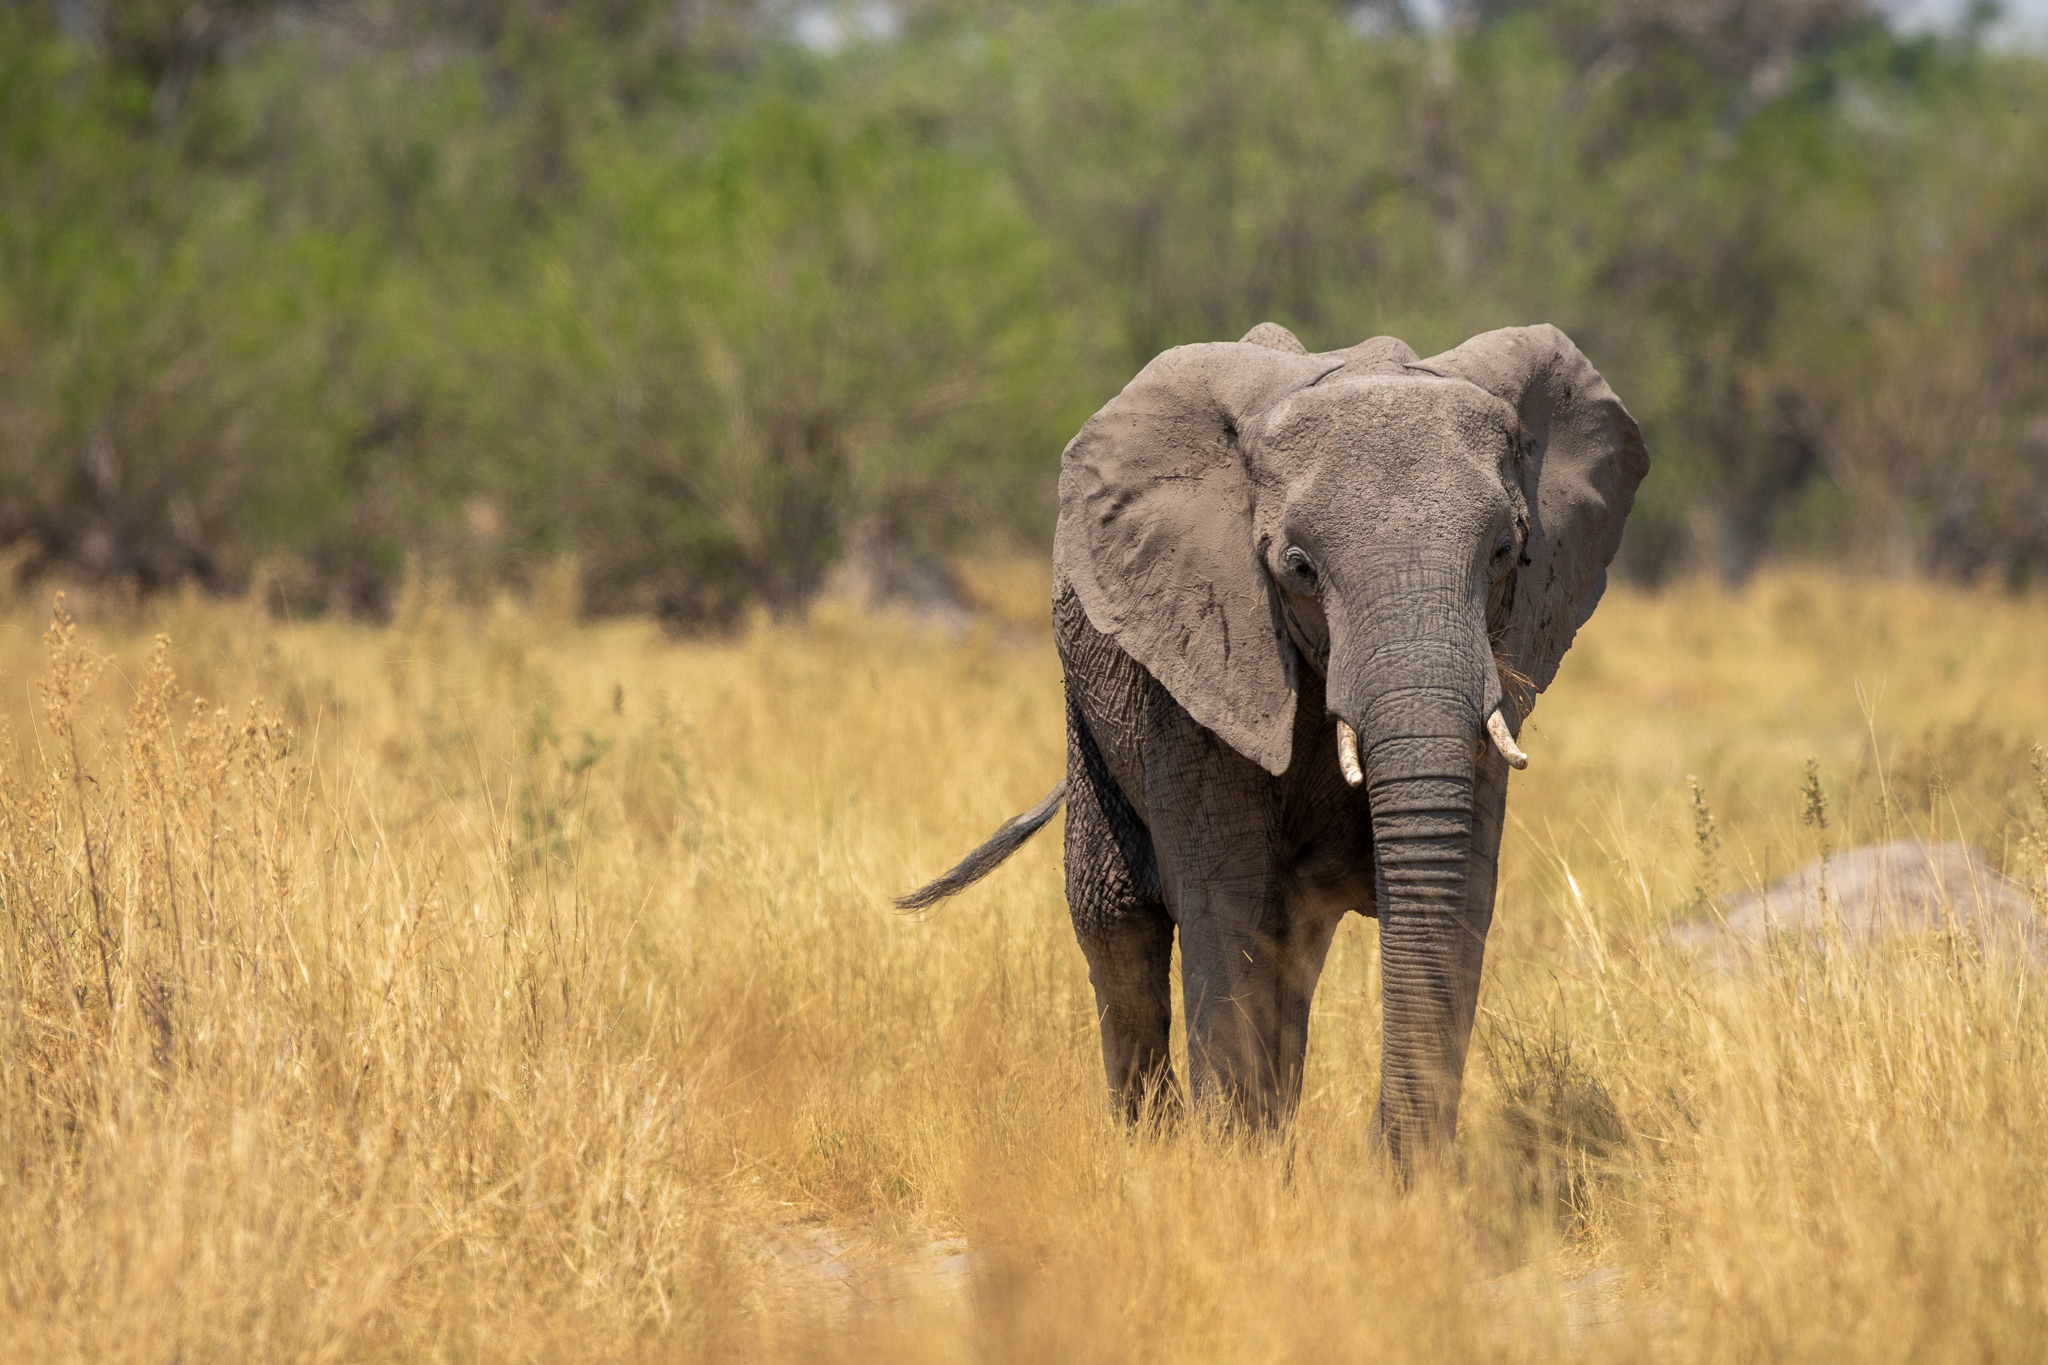 Afrikaanse savanne olifant in de Okavango Delta. De savenneolifant is onderdeel van de Afrikaanse big 5